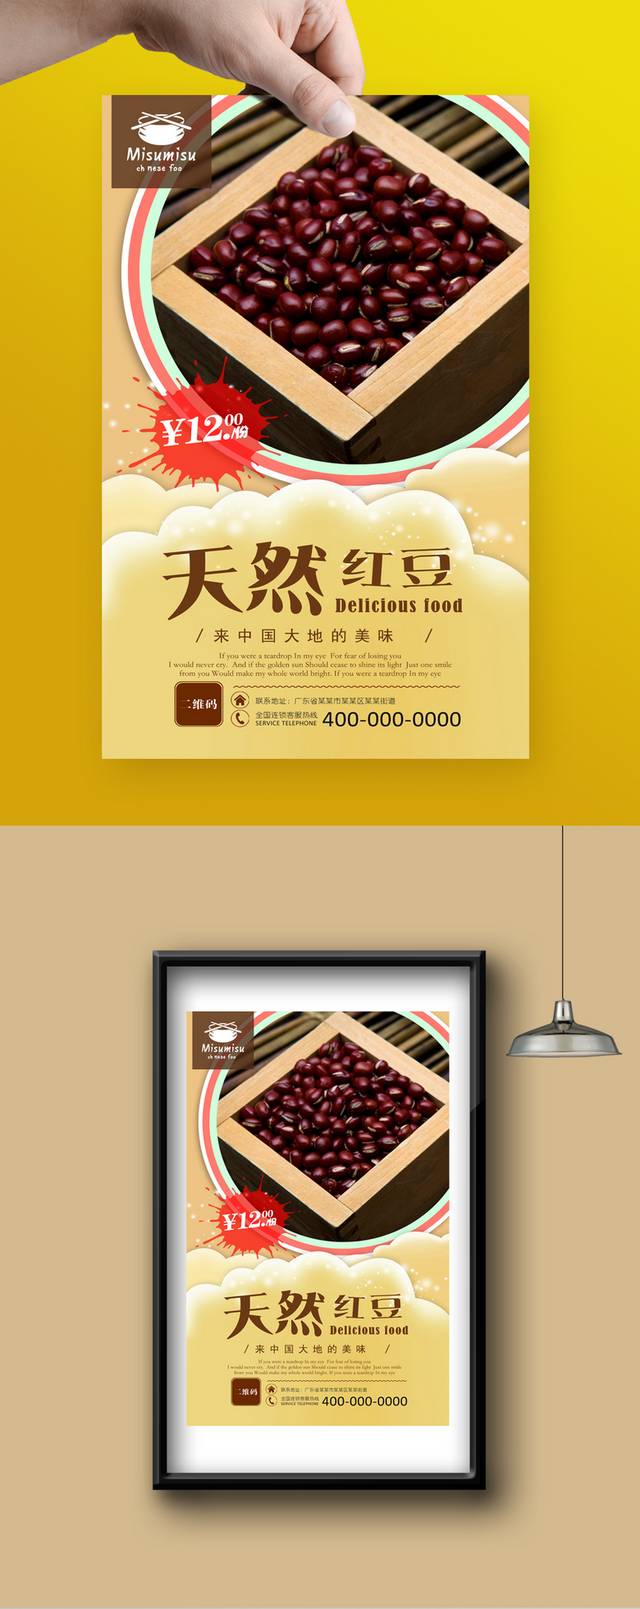 原创红豆餐饮宣传海报设计